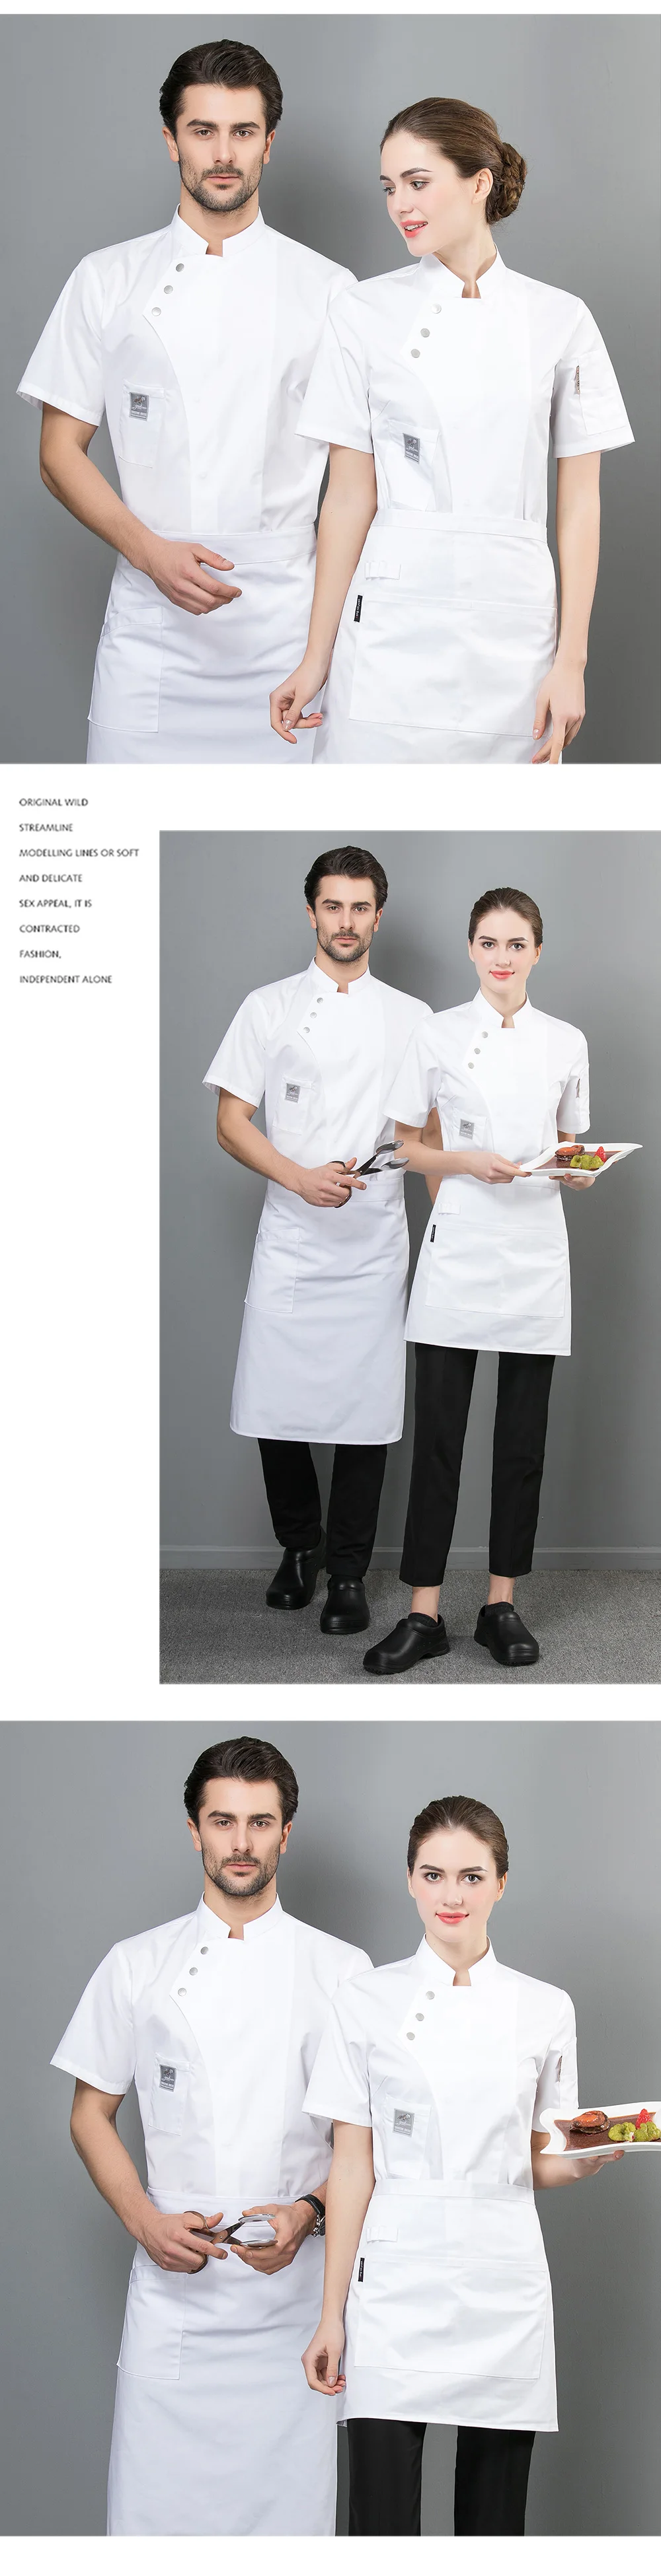 Высококачественные гостиничные ресторанные форменные футболки с короткими рукавами на одно плечо, кухня, рабочая одежда шеф-повара, рабочая одежда для мужчин, 4 цвета